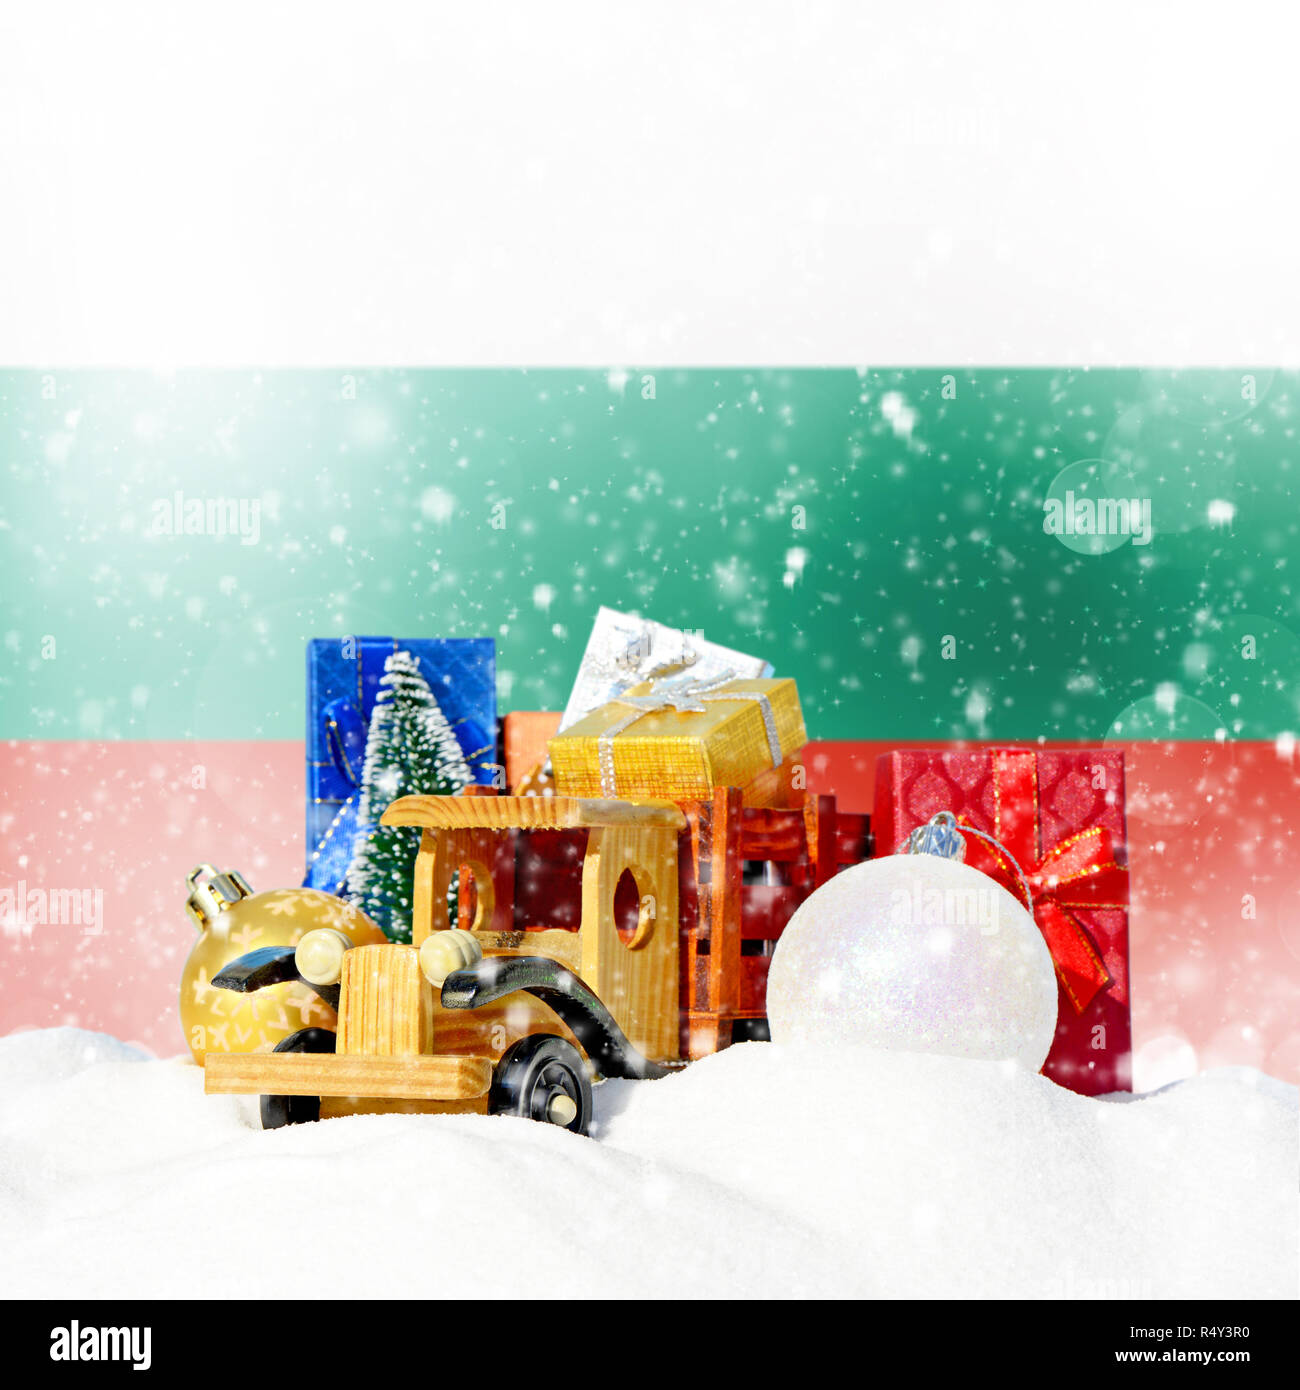 Weihnachten Hintergrund. Spielzeug-LKW mit Geschenken, Neues Jahr Tanne, Kugeln im Schneetreiben und bulgarische Flagge Stockfoto